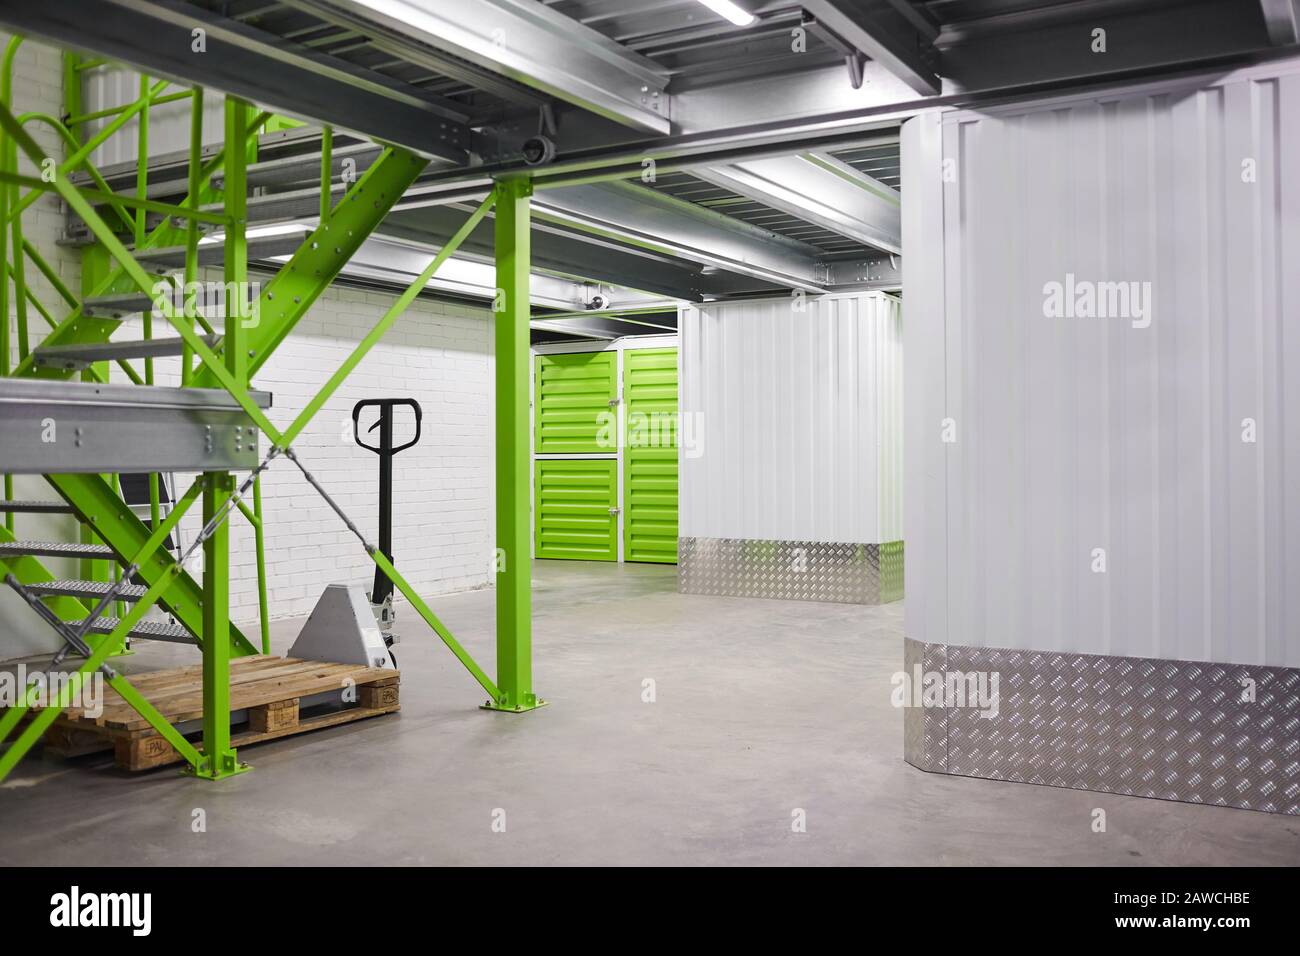 Image d'une salle de stockage moderne vide et propre avec équipement Banque D'Images